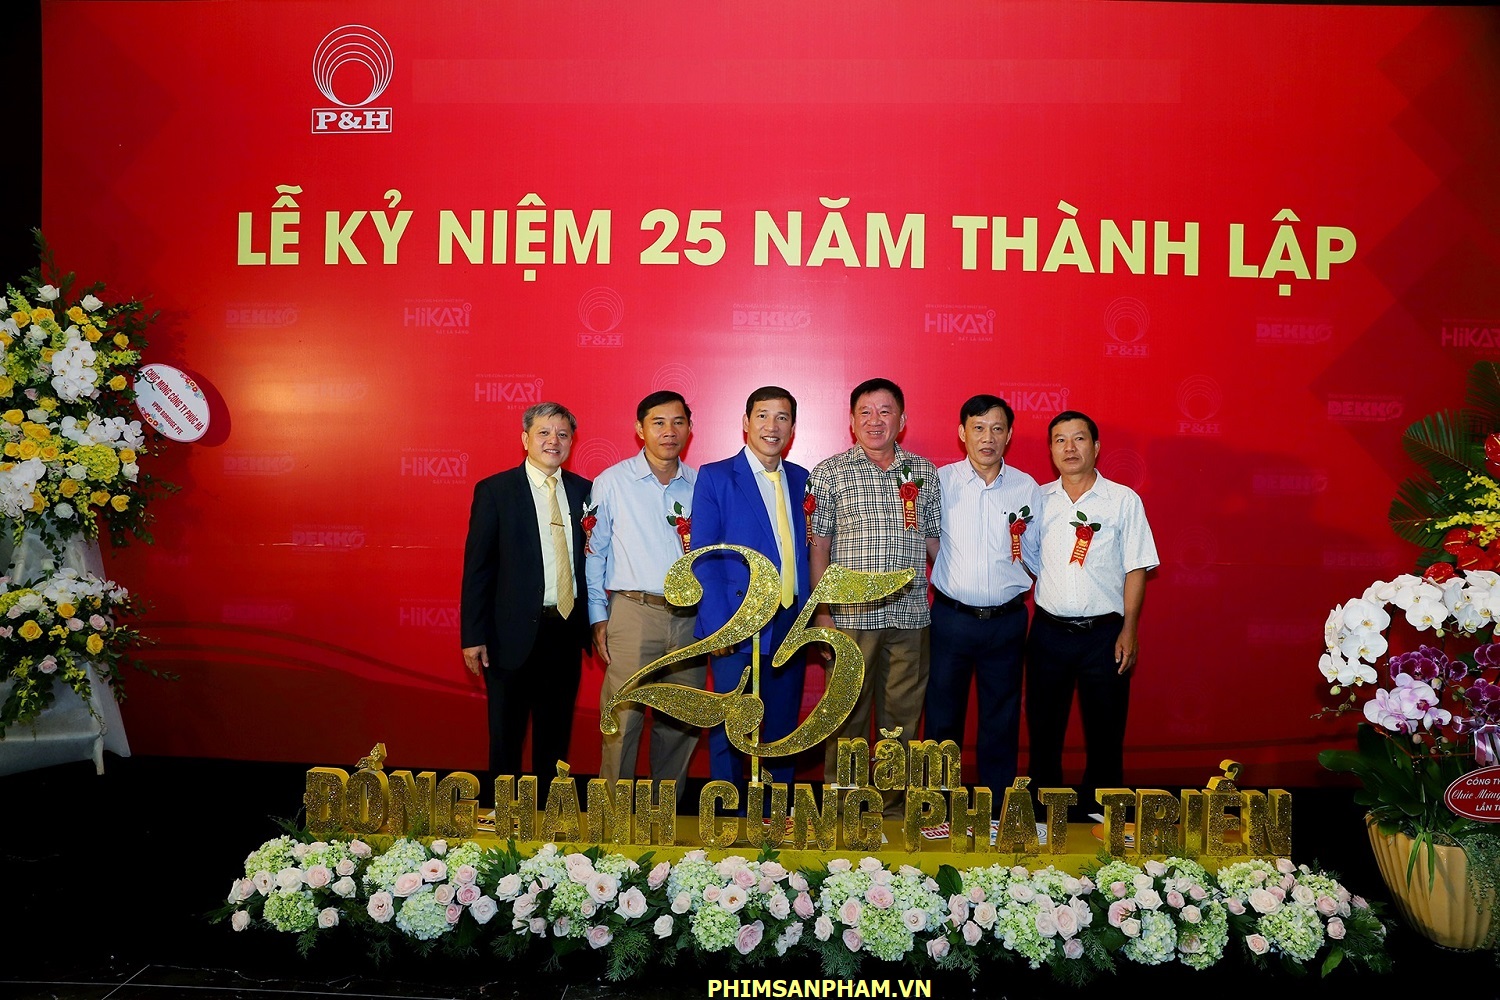 Phimsanpham.vn – quay phim kỷ niệm 25 năm thành lập công ty